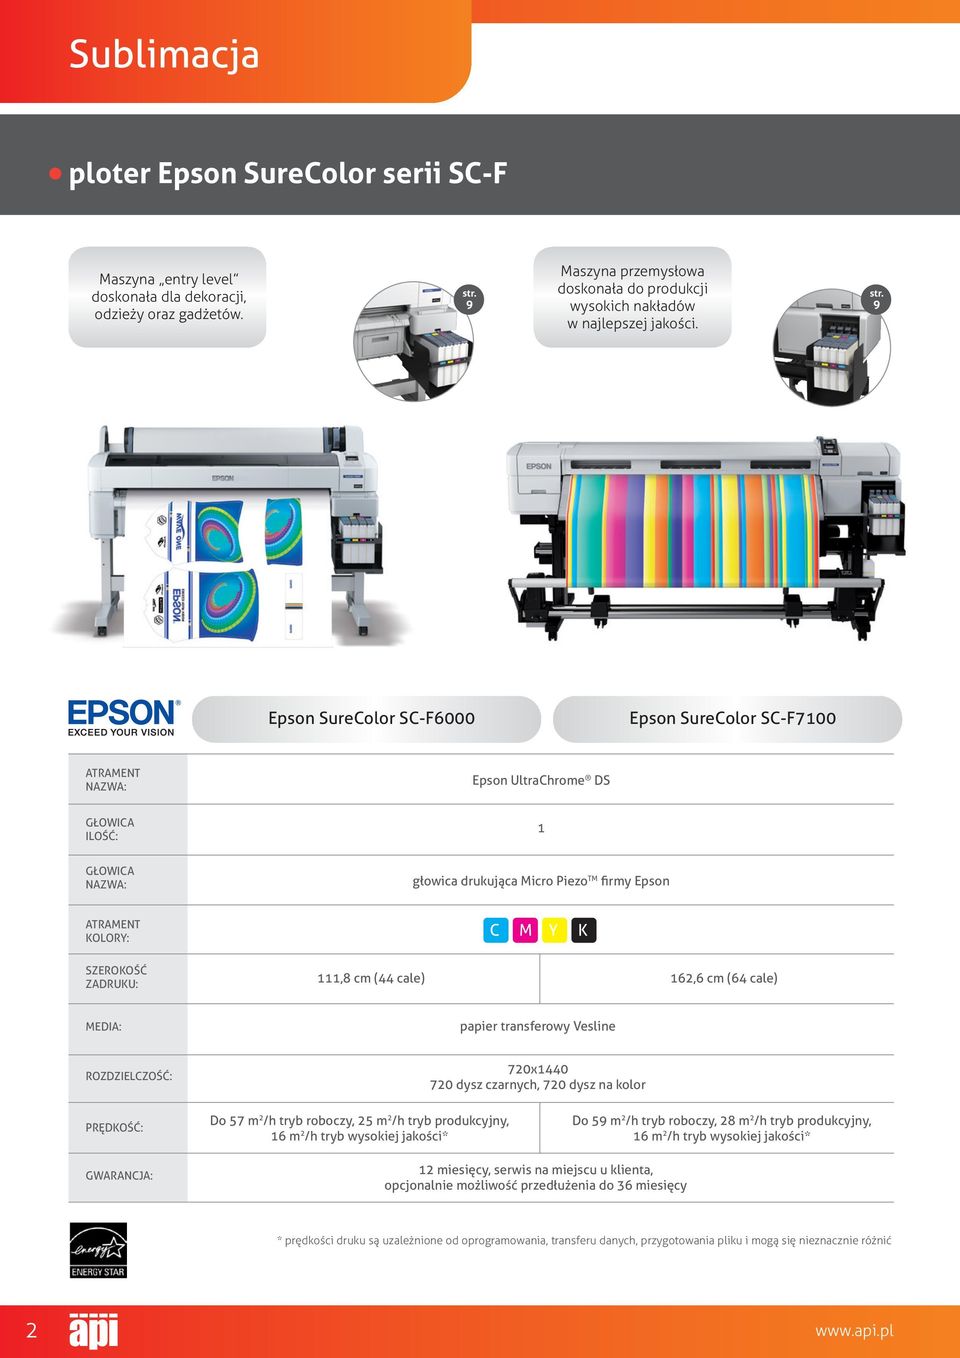 9 Epson SureColor SC-F6000 Epson SureColor SC-F7100 atrament nazwa: Epson UltraChrome DS głowica ilość: 1 głowica nazwa: głowica drukująca Micro Piezo TM firmy Epson atrament kolory: C M y K